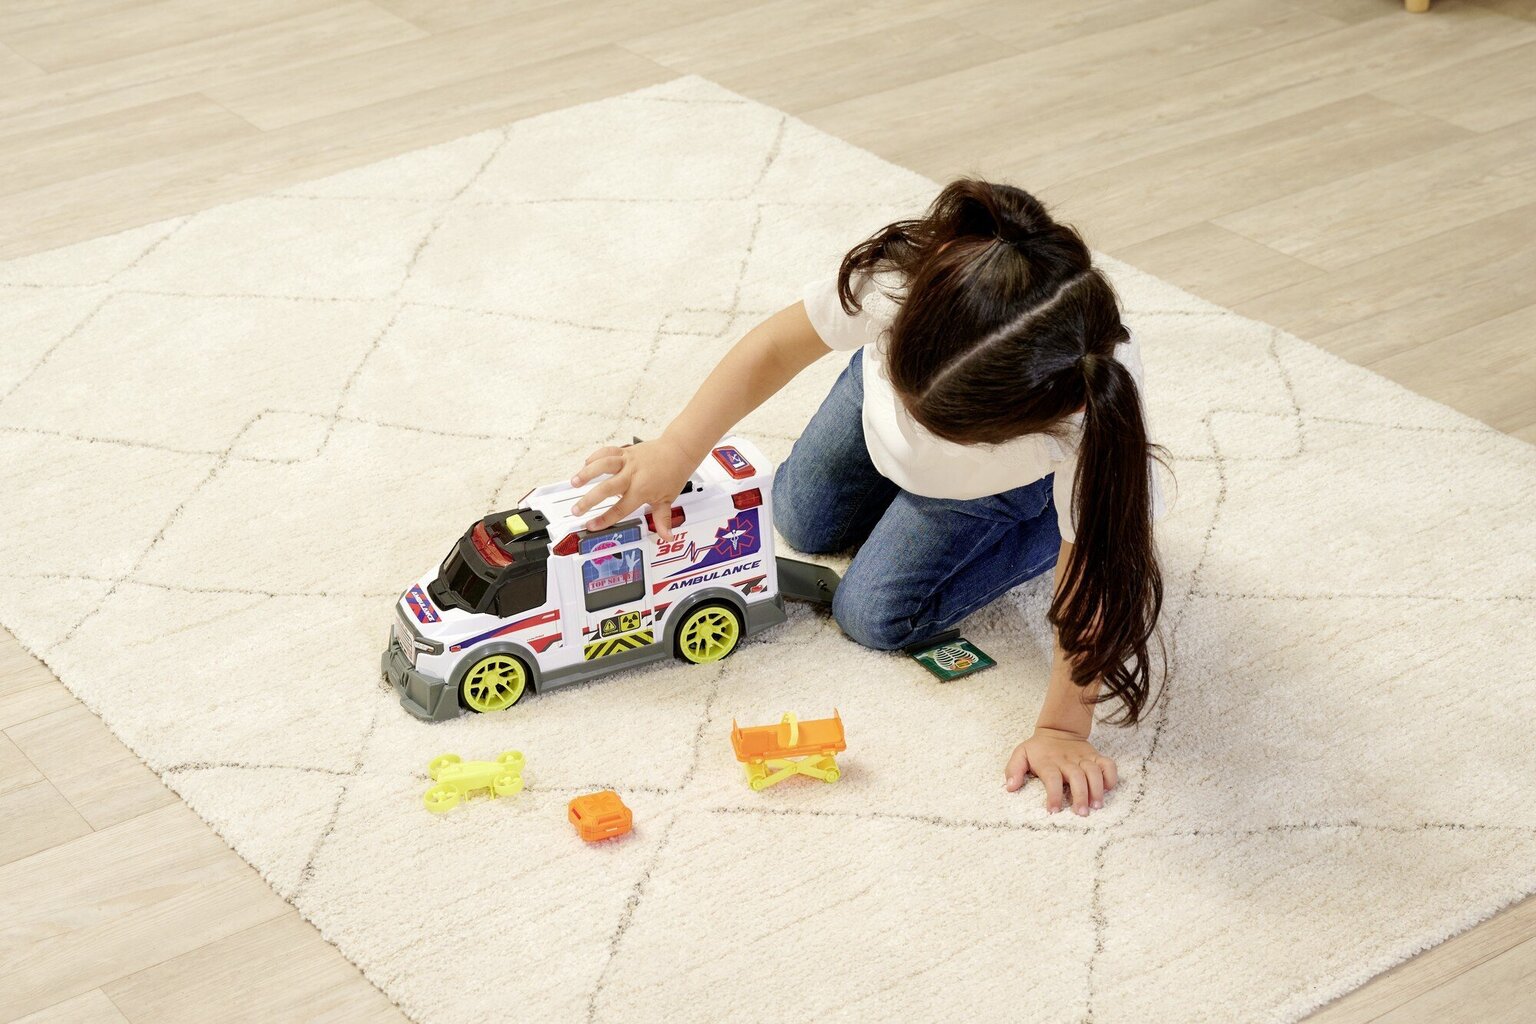 Interaktiivne kiirabiauto ja Dickie Toys tarvikud Light Sound цена и информация | Poiste mänguasjad | kaup24.ee